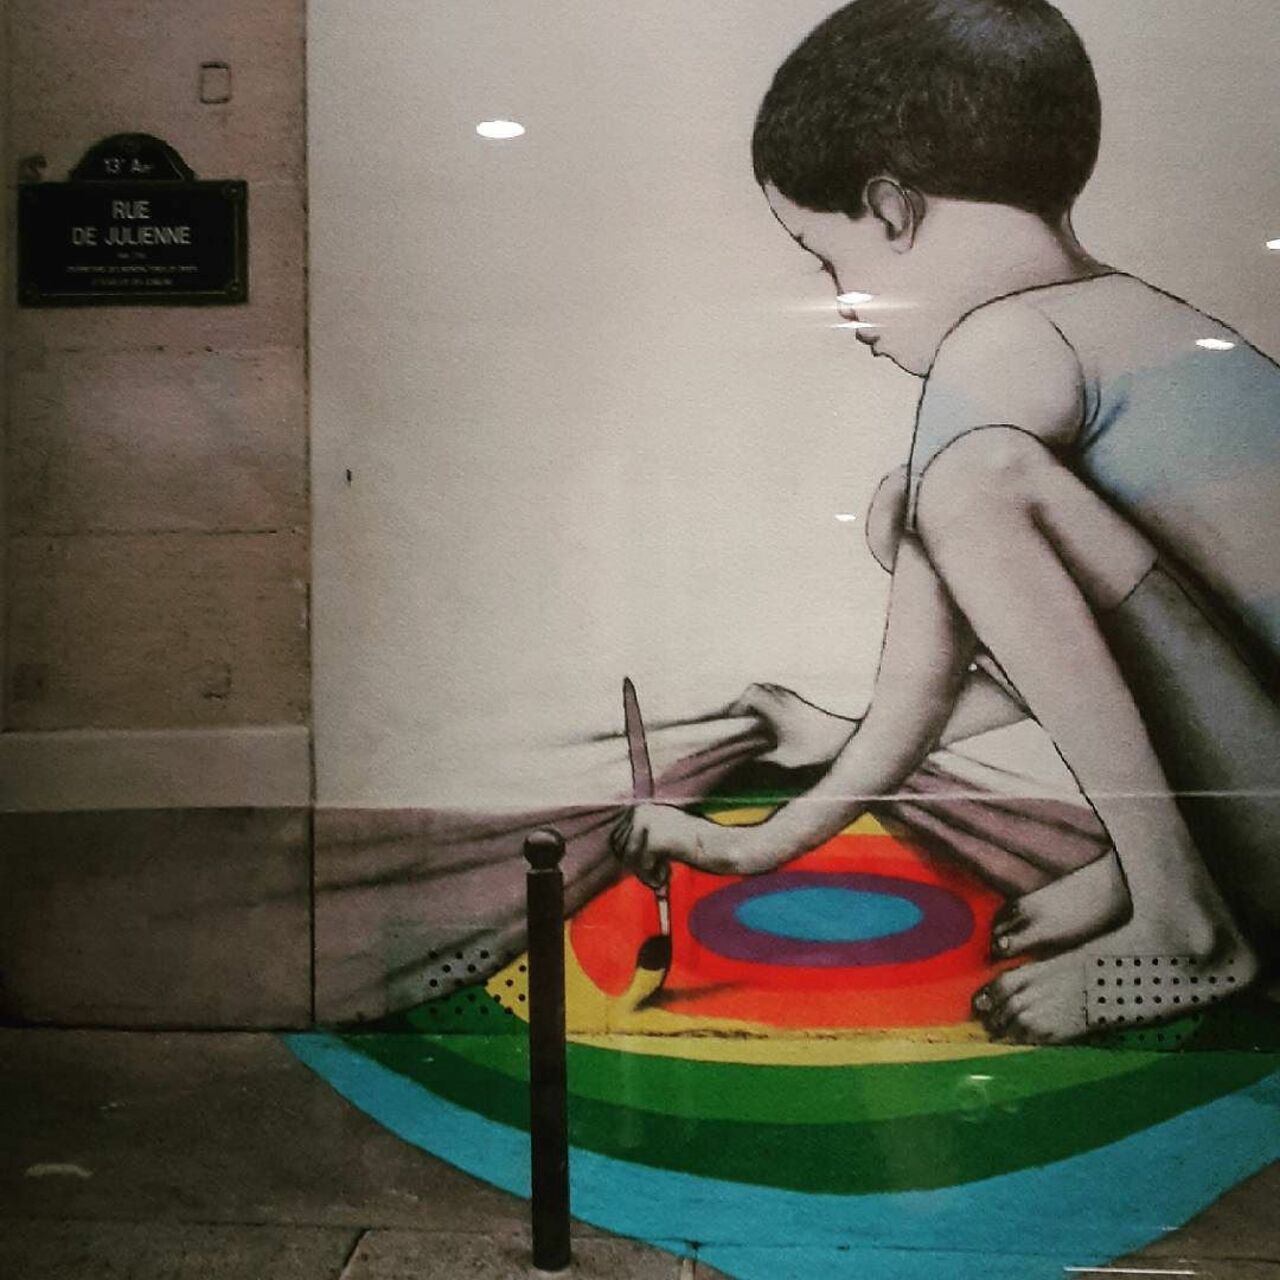 #Paris #graffiti photo by @d.mattio http://ift.tt/1W3YDQl #StreetArt https://t.co/Pz0d4Og0bd